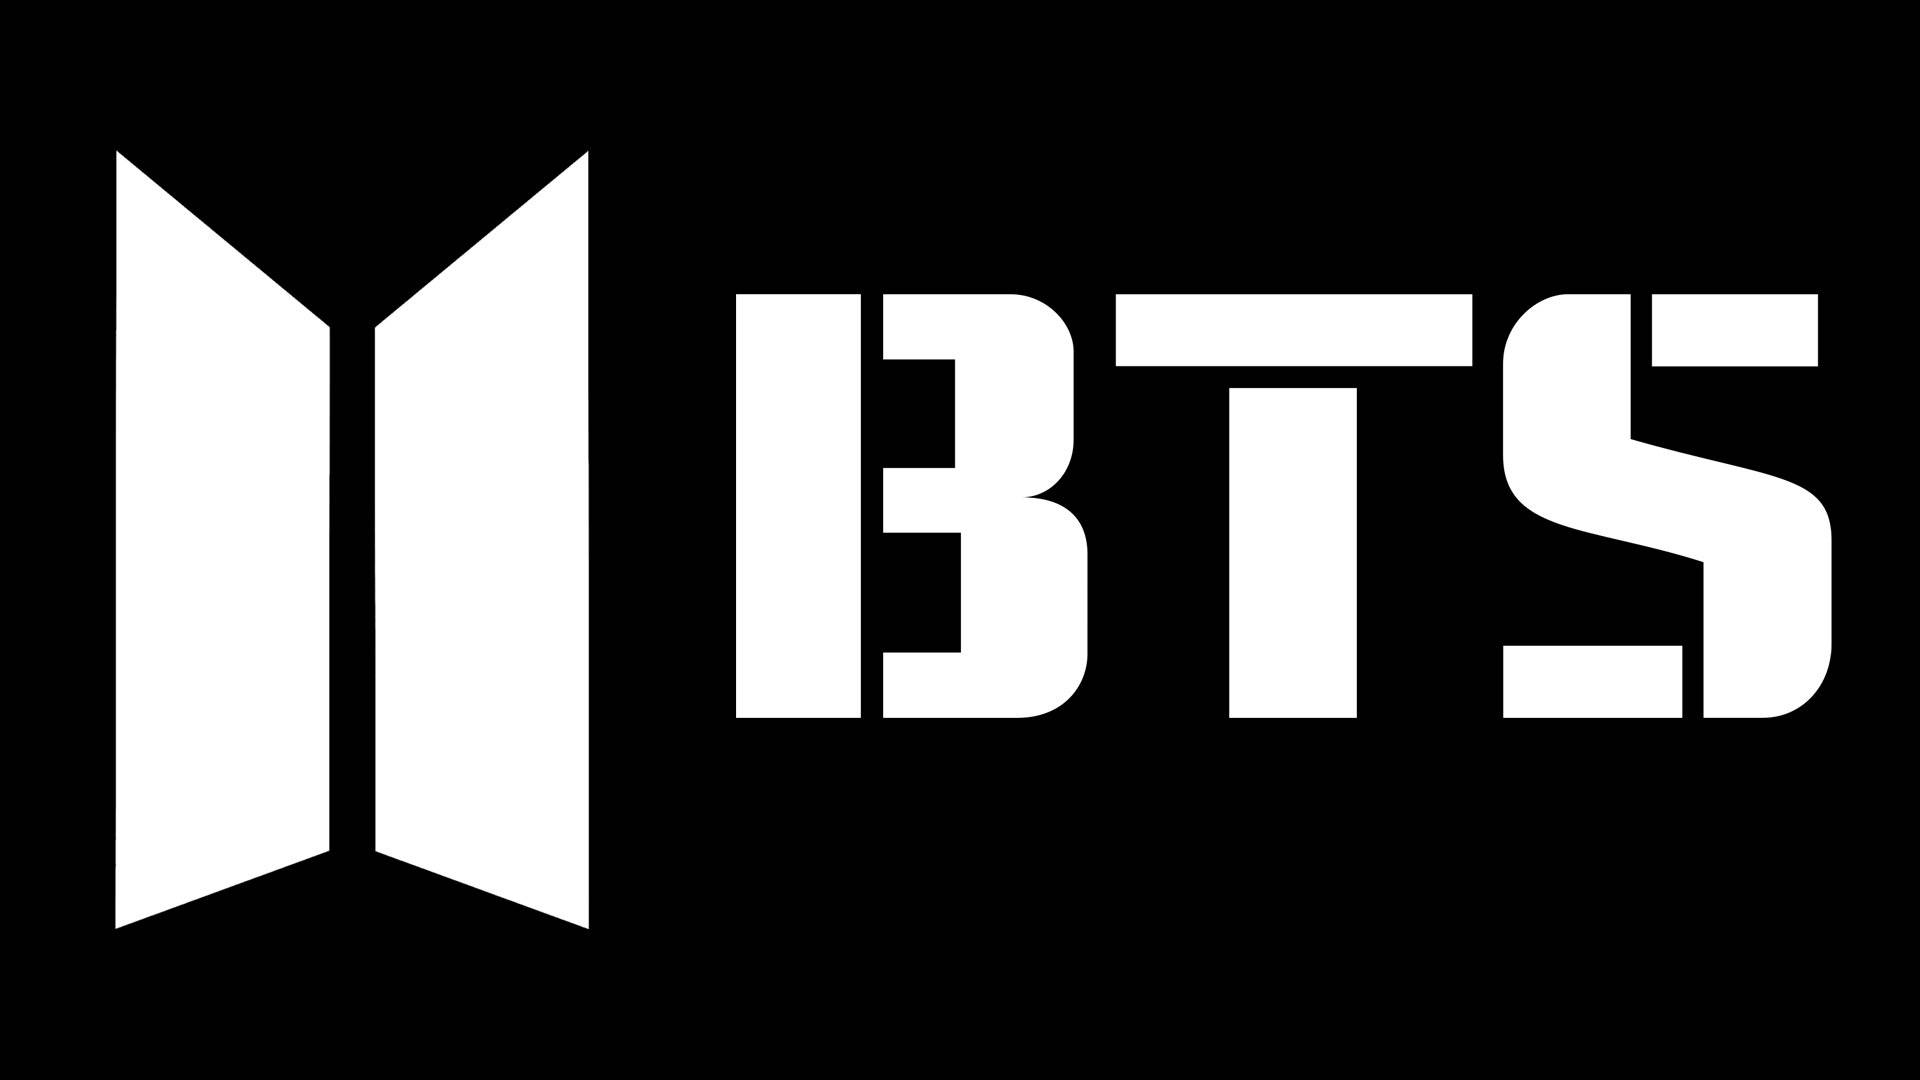 Bts Logo Wallpaper for FREE